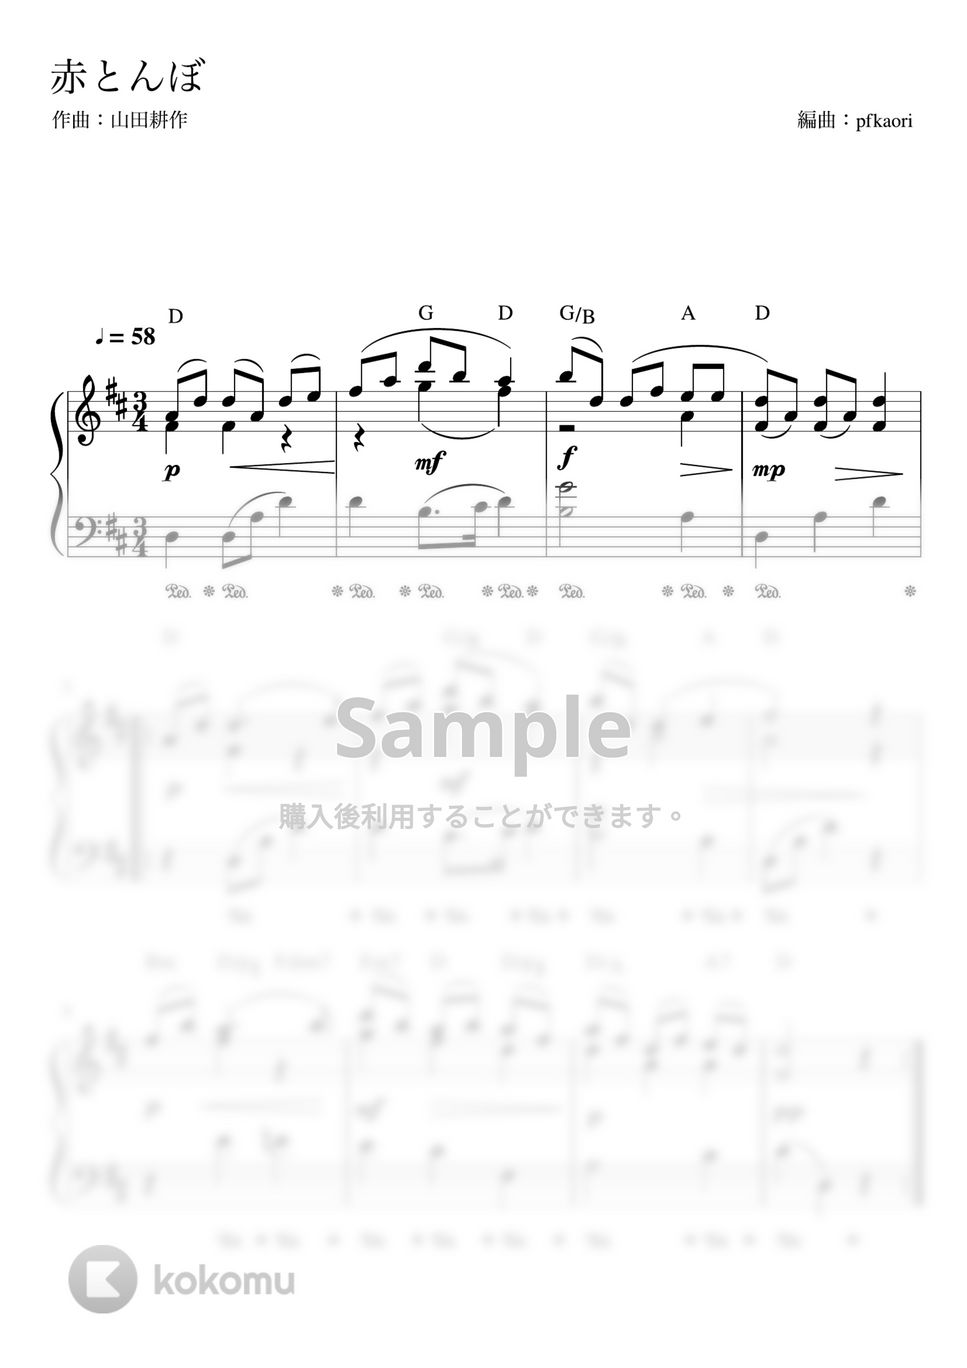 赤とんぼ (Ddur ピアノソロ初~中級(コード・ペダル付き)) by pfkaori